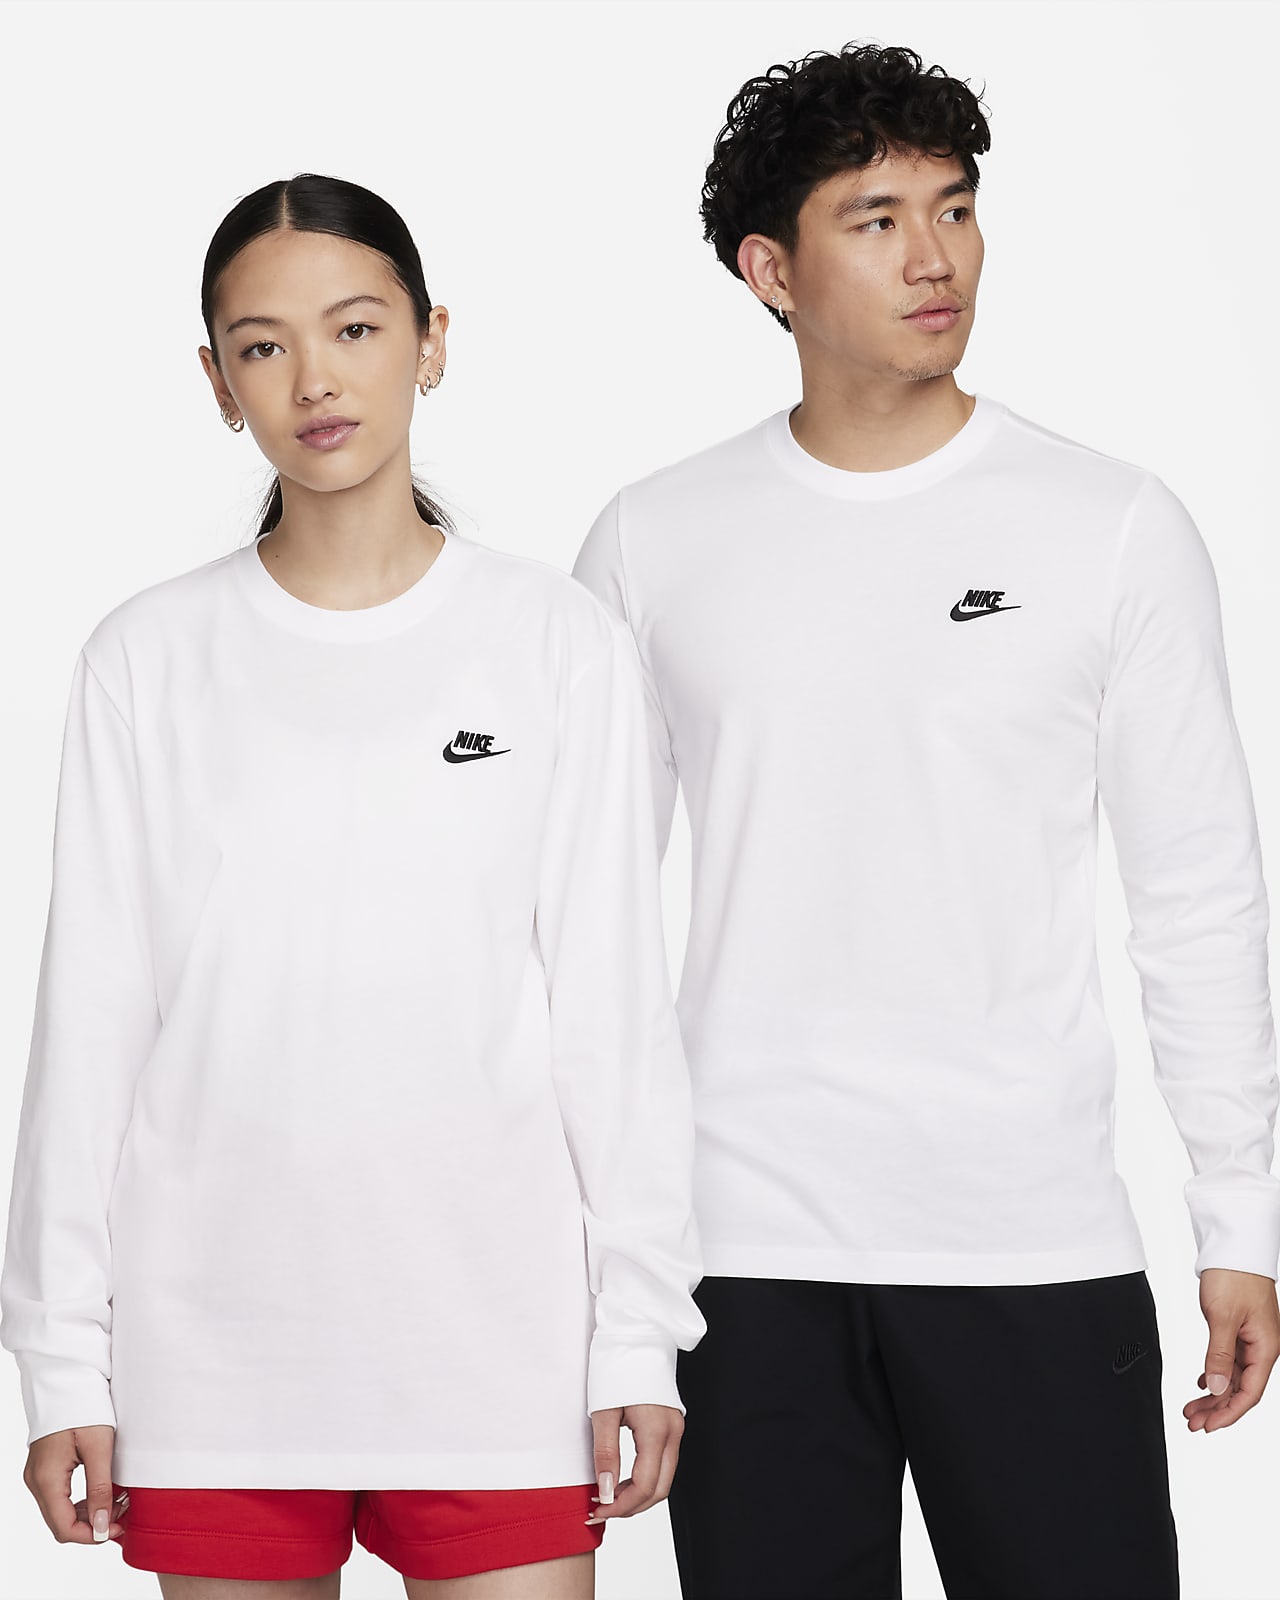 Nike Sportswear 男子长袖T恤